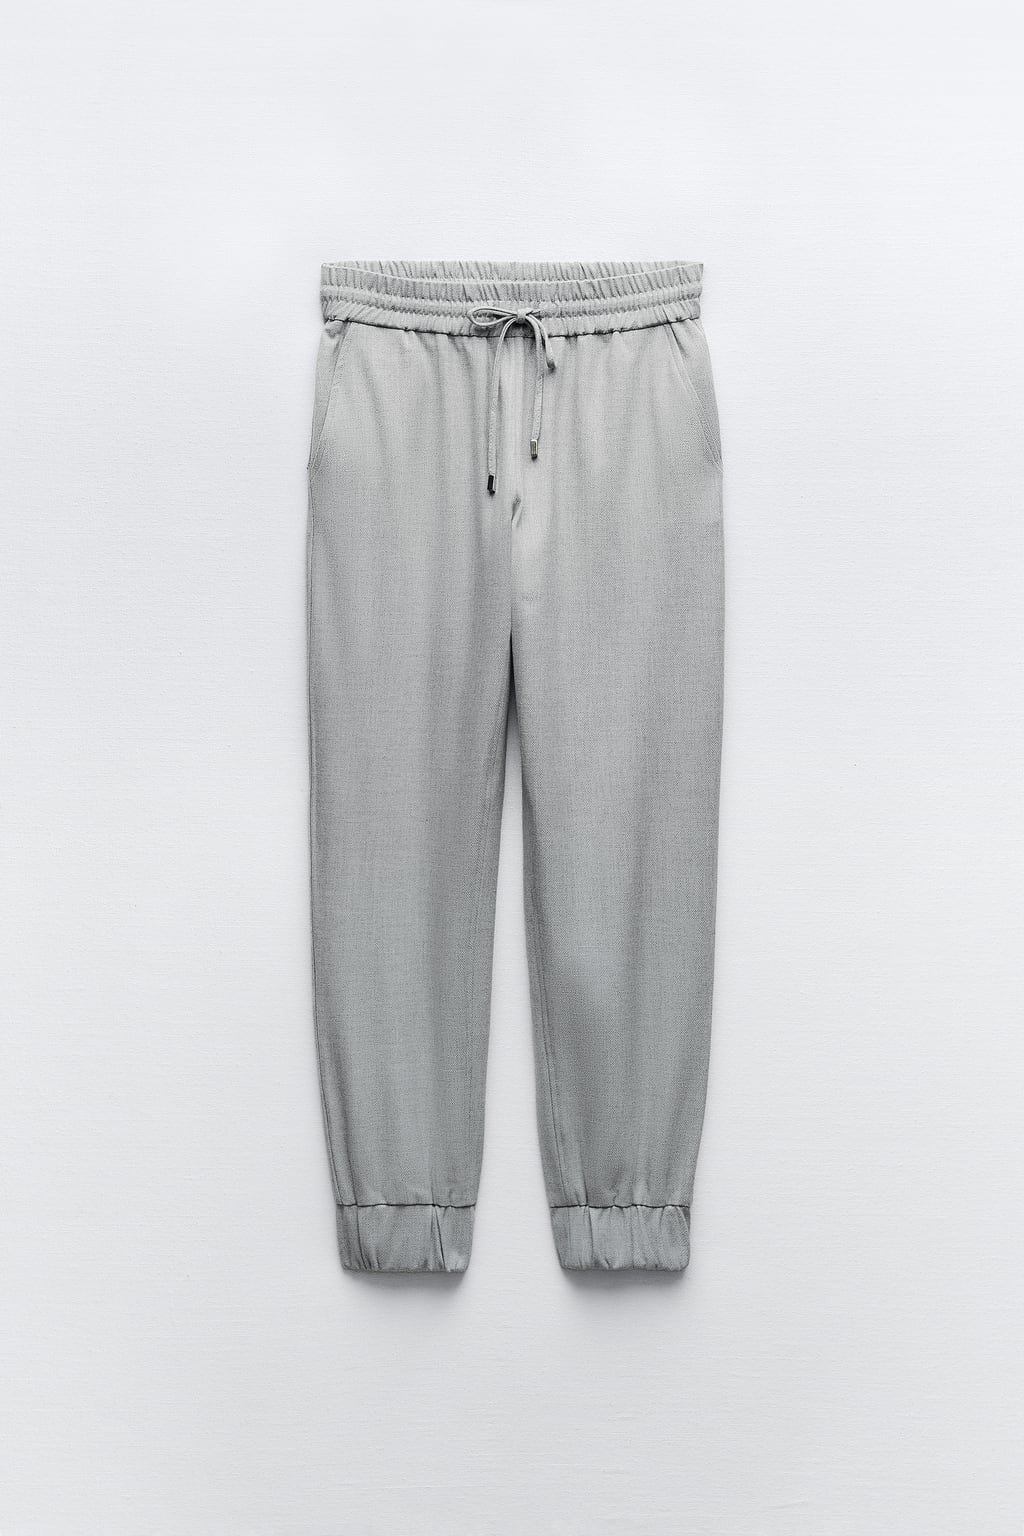 Спортивные брюки в стиле пижамы ZARA, серый мергель спортивные брюки в стиле пижамы zara хаки